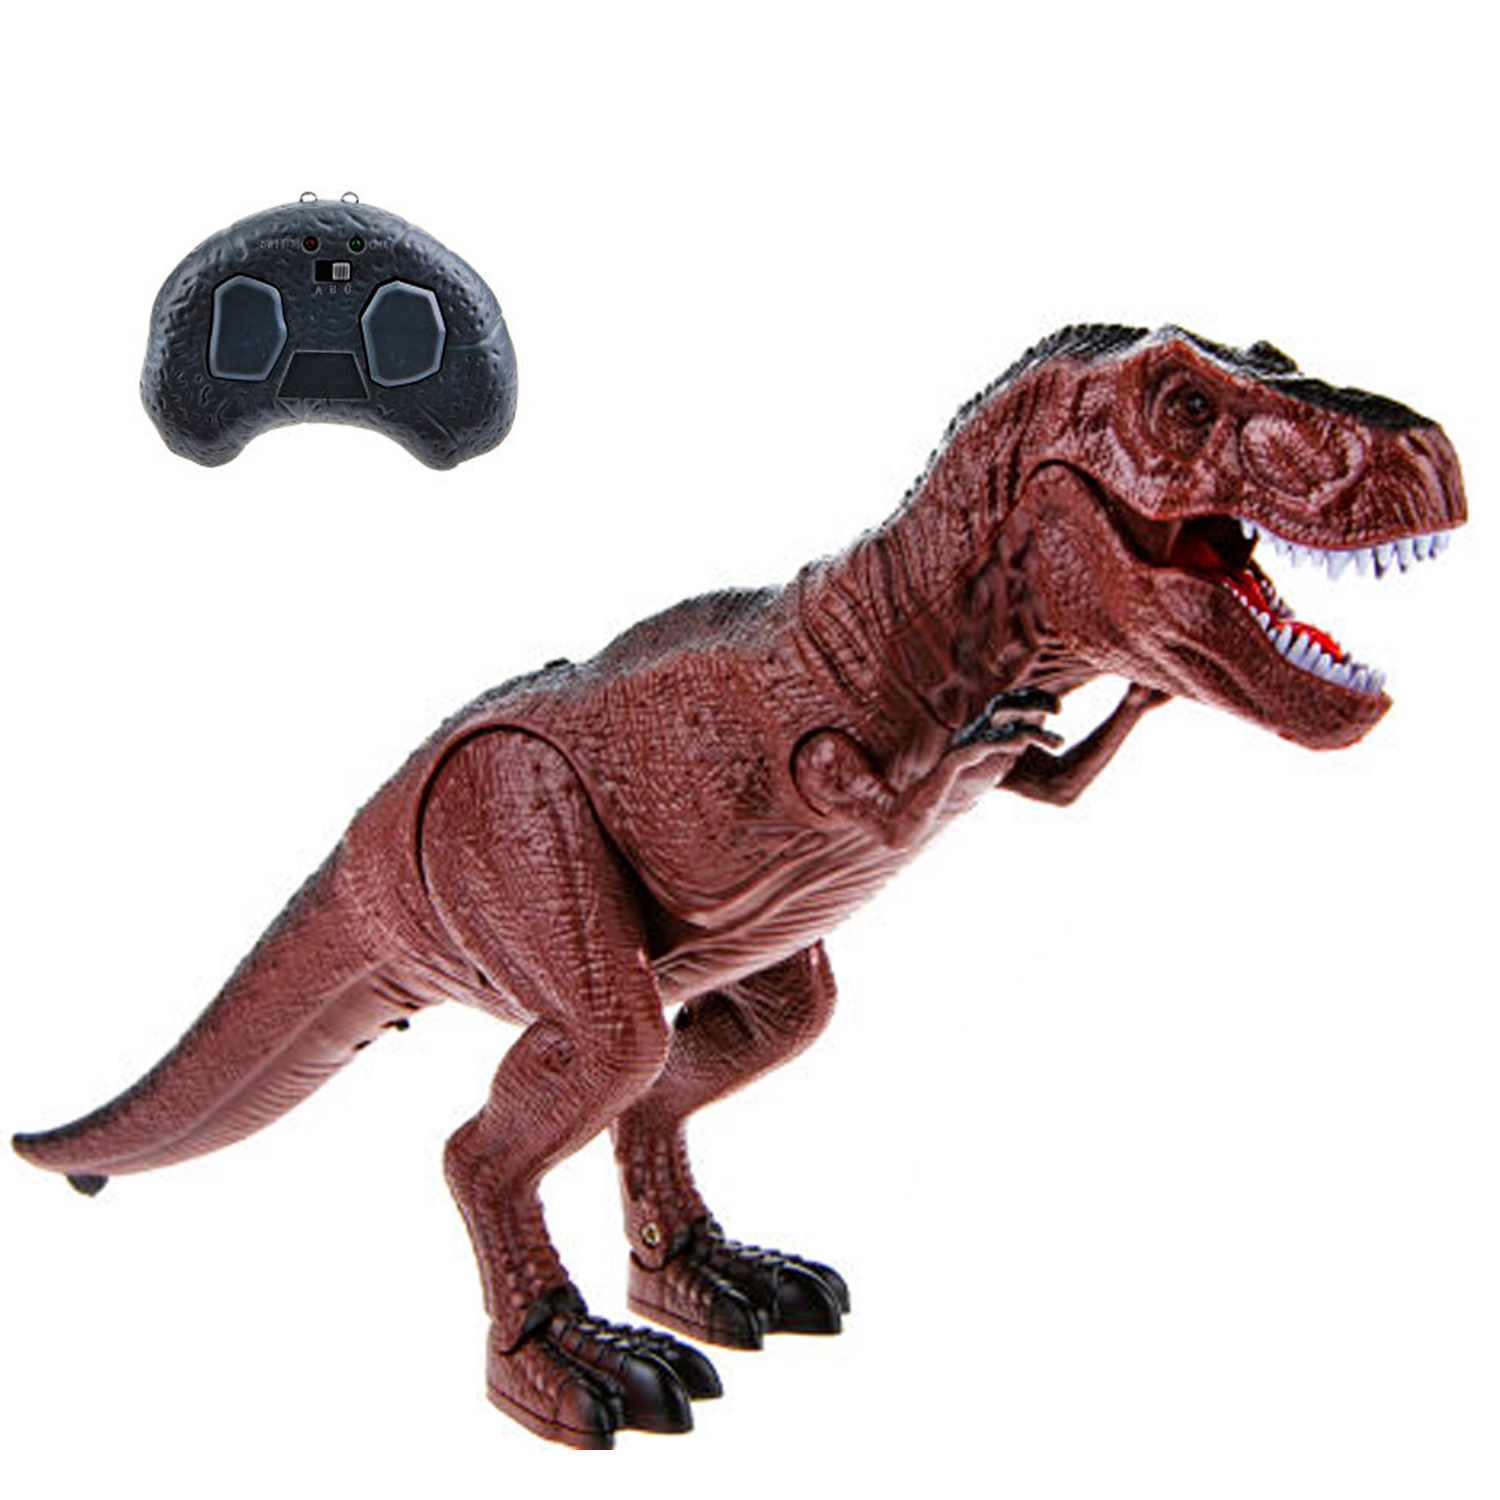 1toy RoboLife: Робо-Тираннозавр (Т21013) купить в интернет-магазине, цена на RoboLife: Робо-Тираннозавр (Т21013)